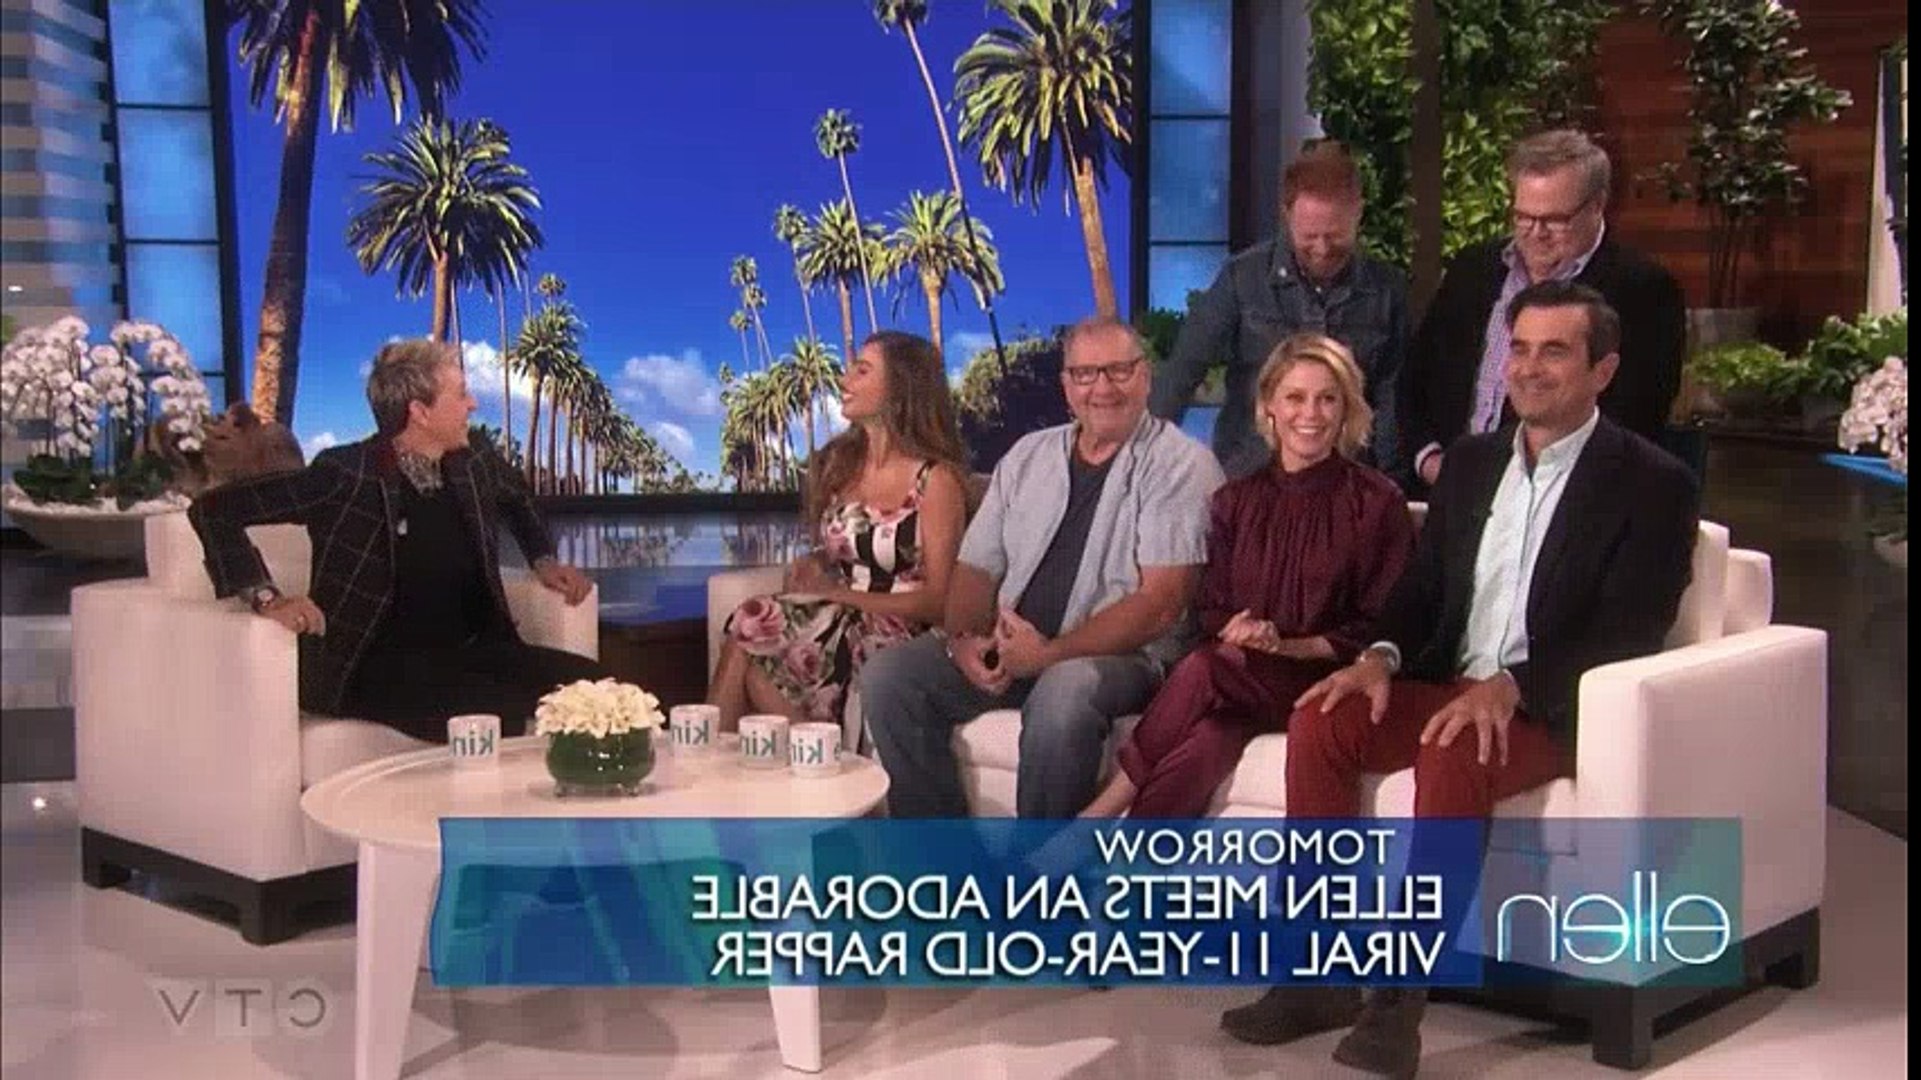 The Ellen DeGeneres Show S16E16 2018 09 25 Cast of Modern Family - video  Dailymotion